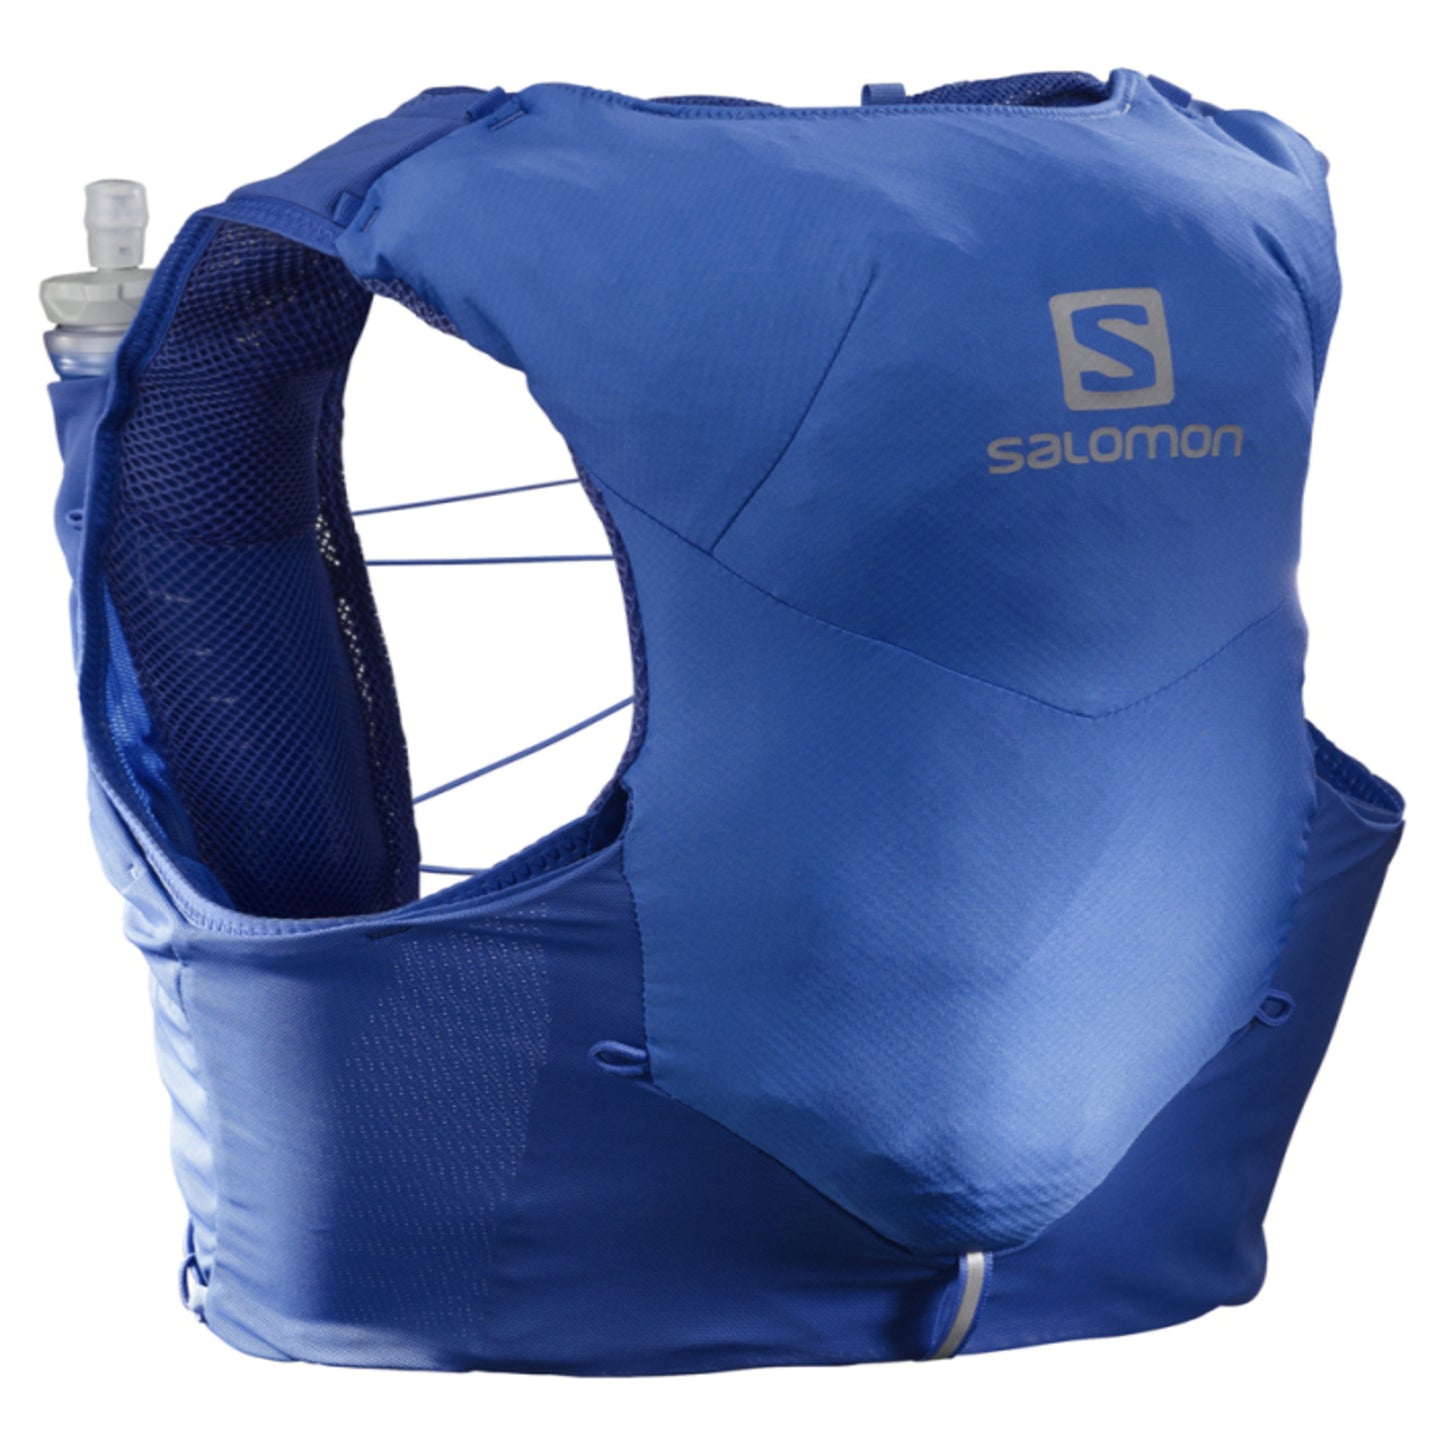 Salomon Unisex ADV Skin 5 con matraces Azul Náutico